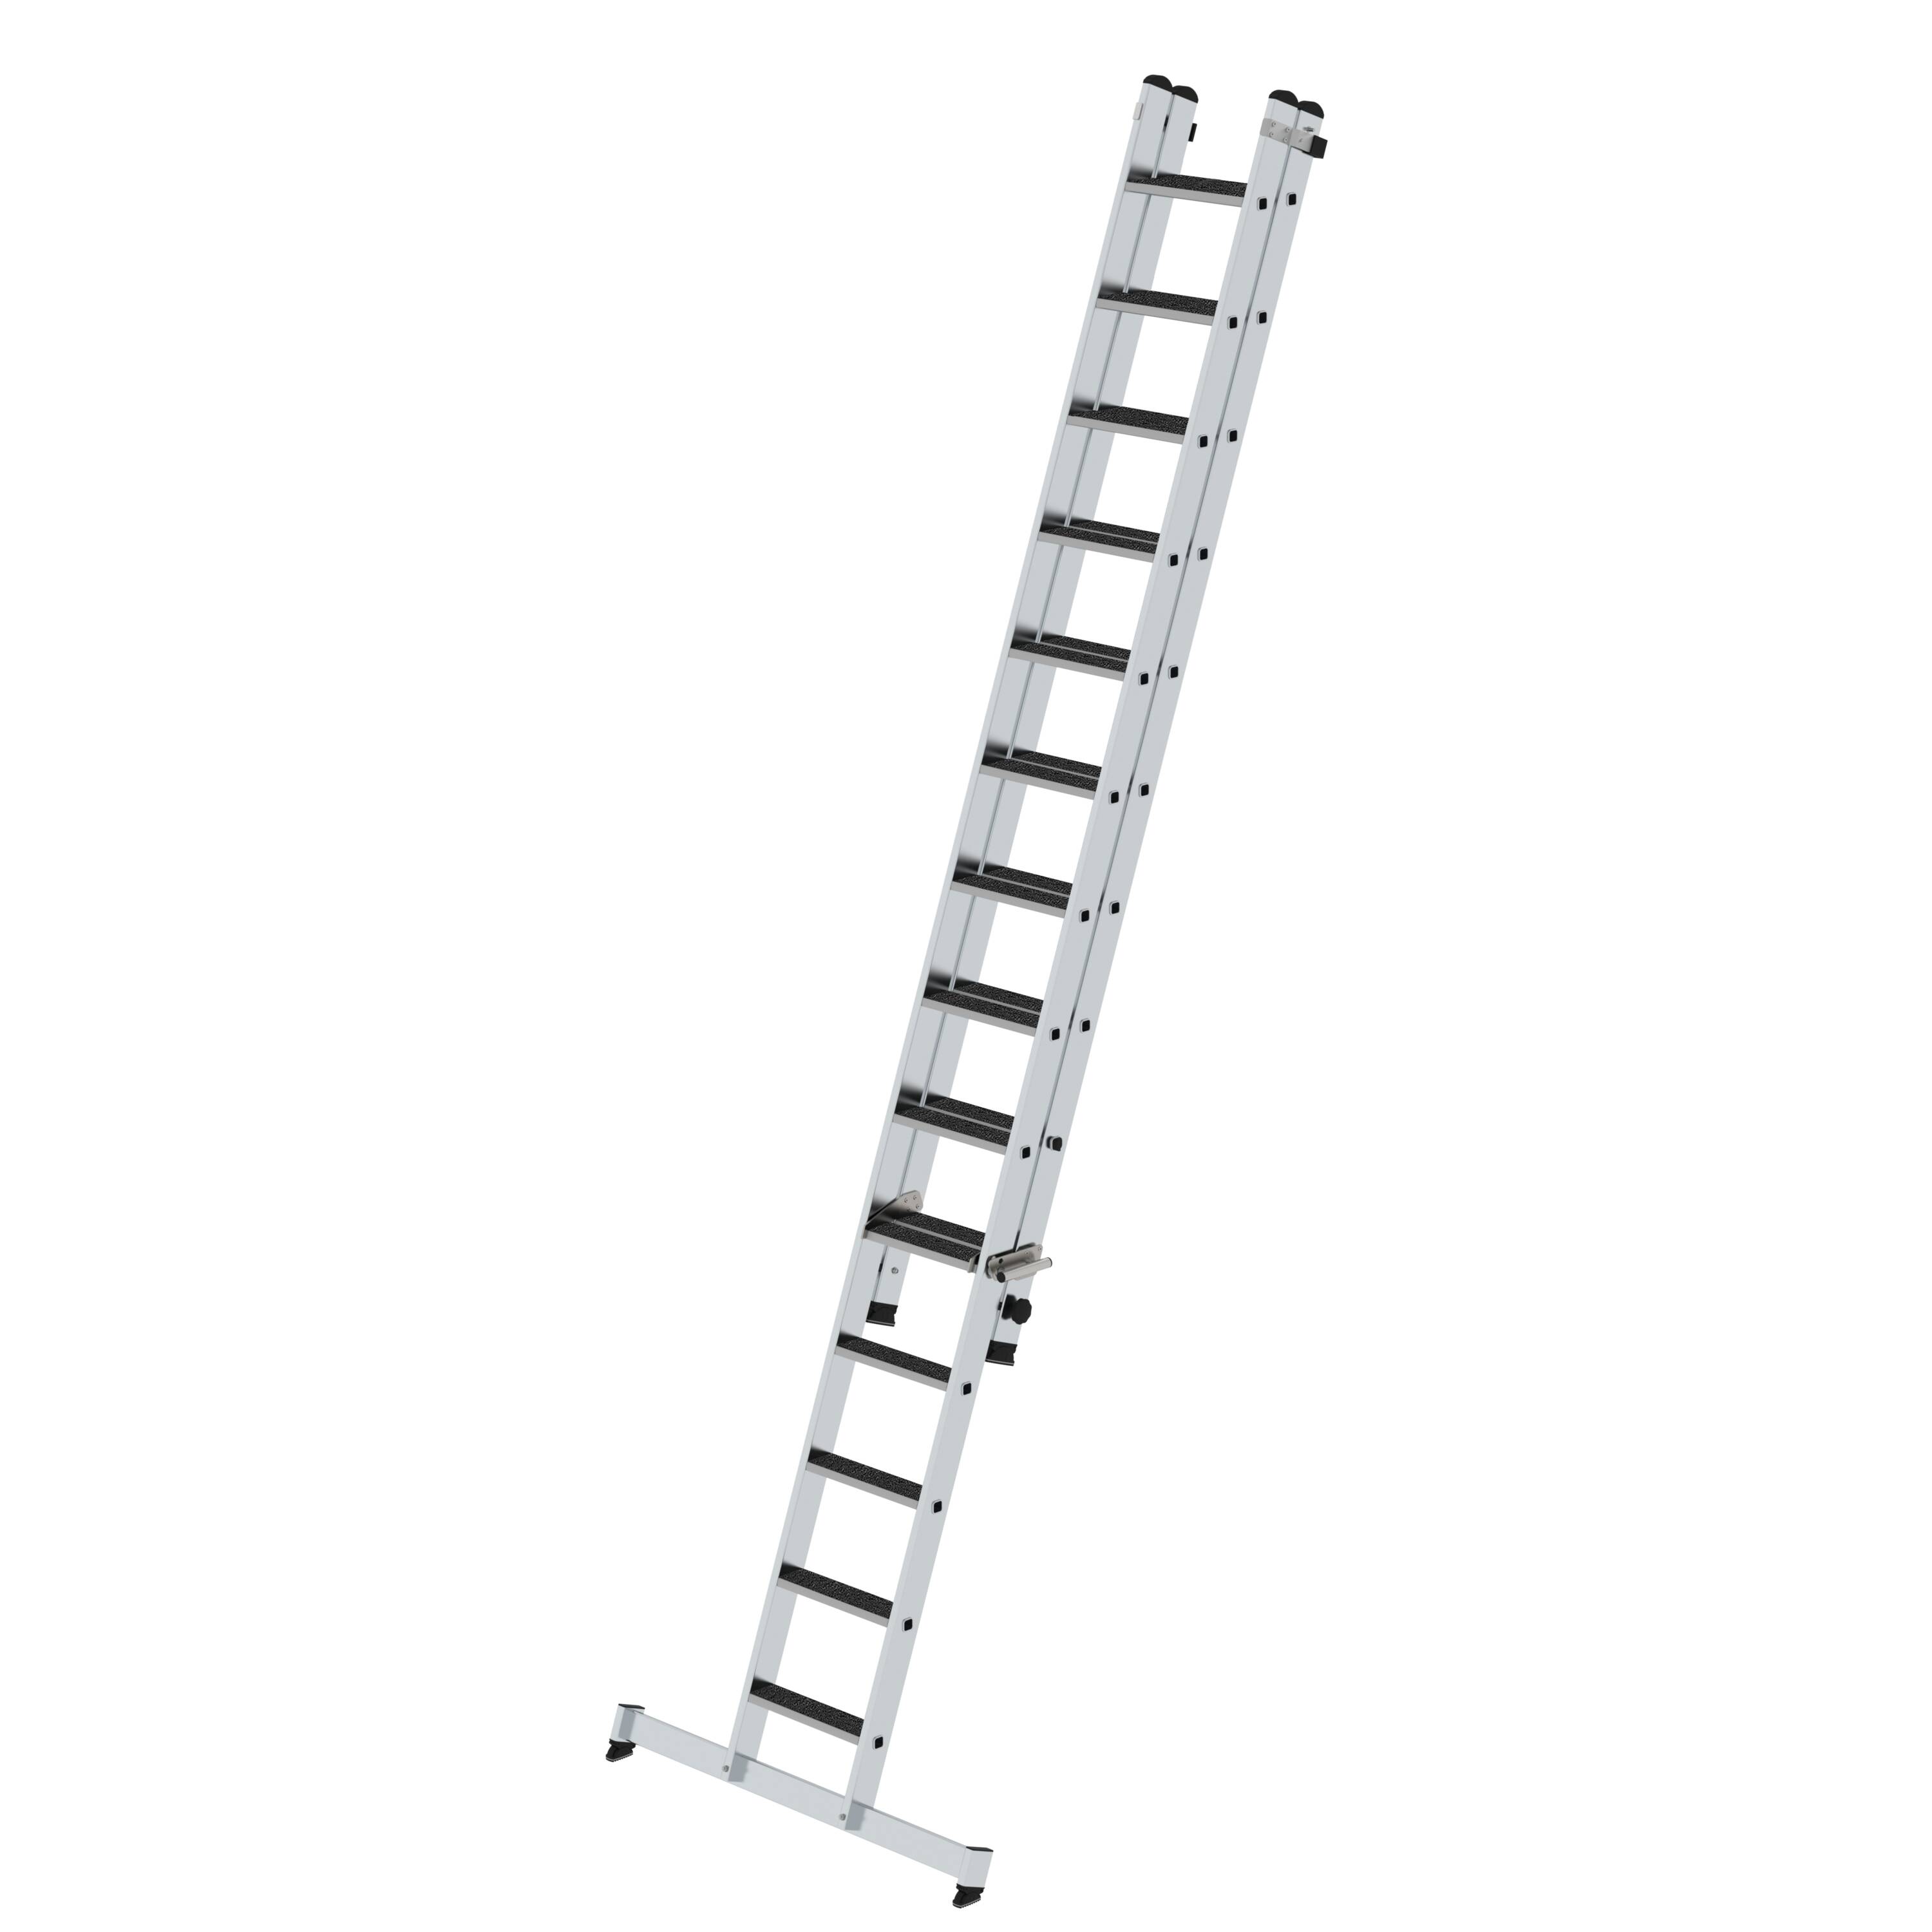 MUNZ Stufen-Schiebeleiter 2-teilig mit nivello-Traverse und clip-step R13  